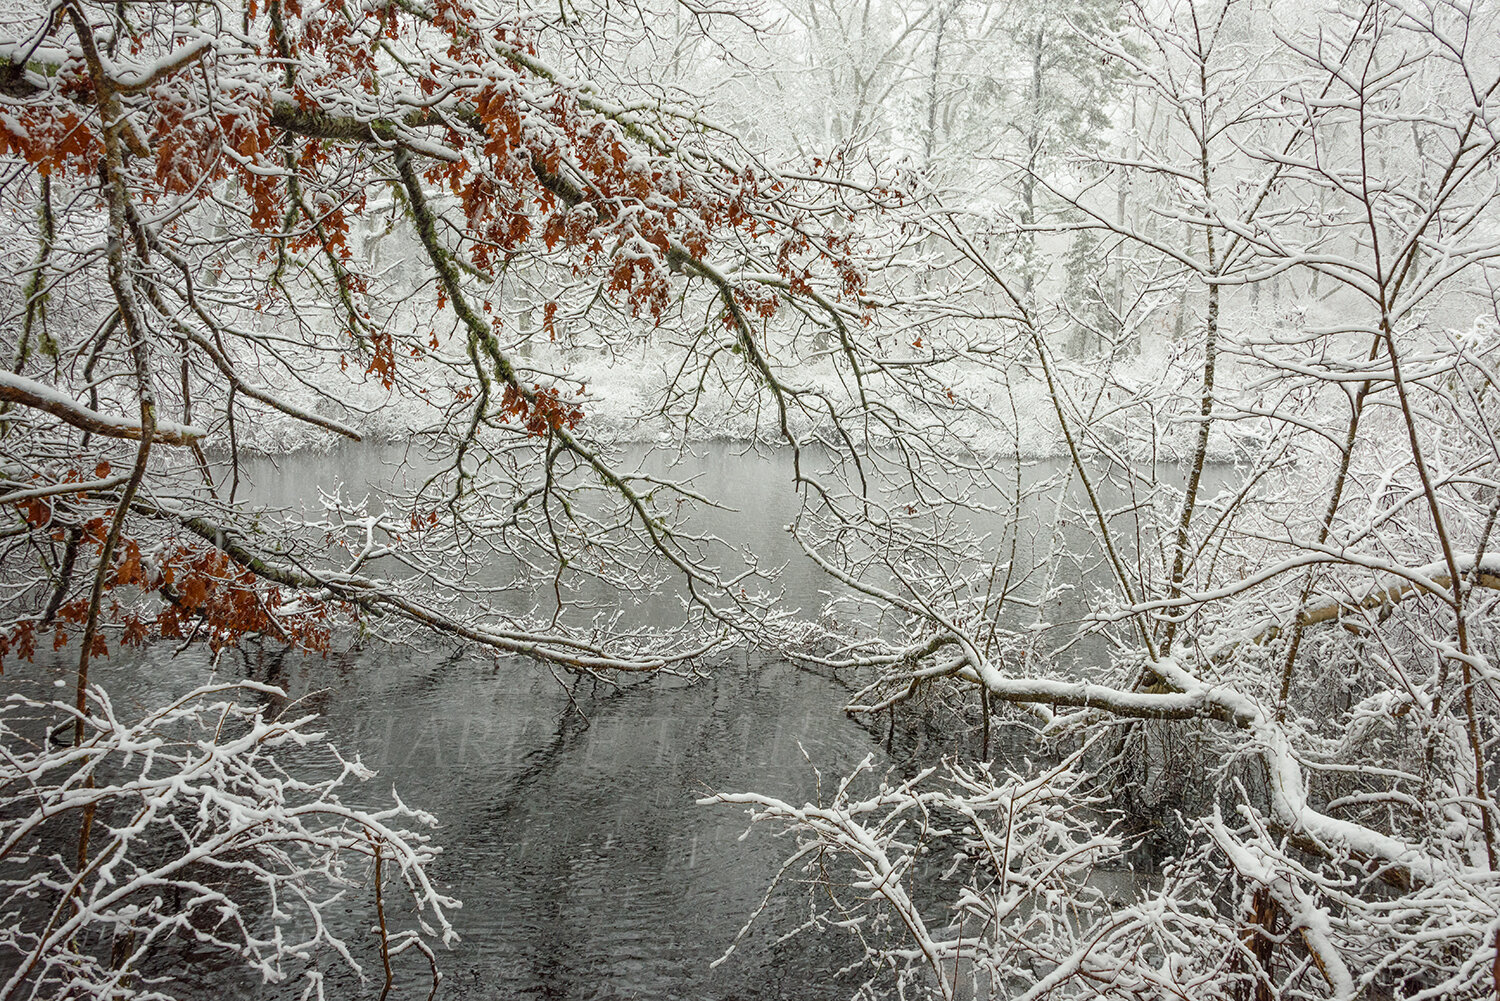 CC#220 Magical Snowstorm, Reubens Pond Preserve